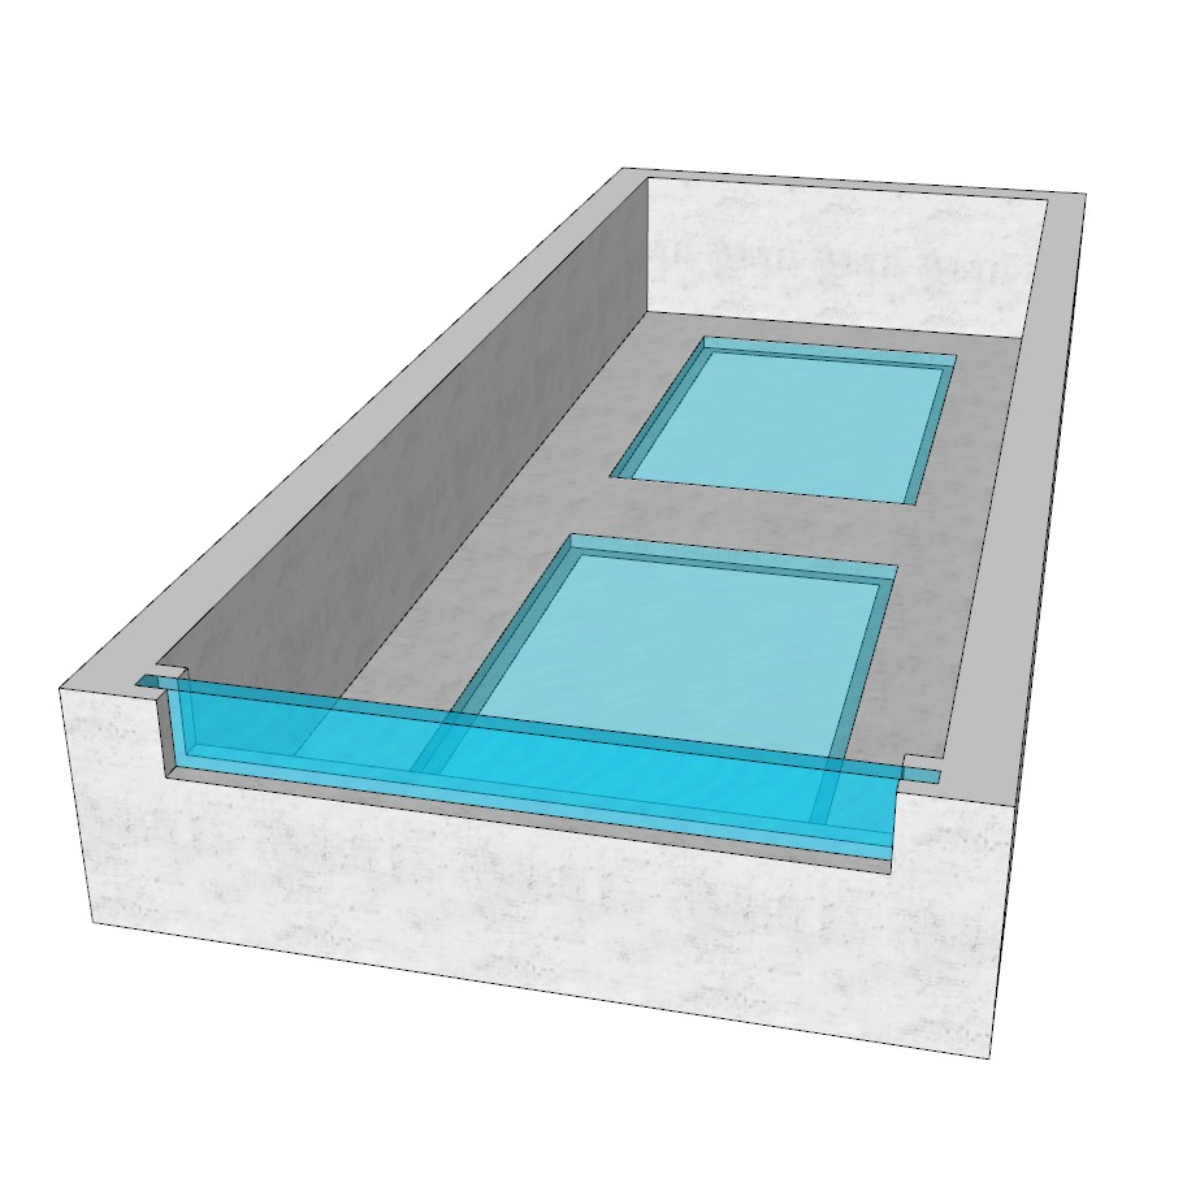 Acrylic edge panel for pool